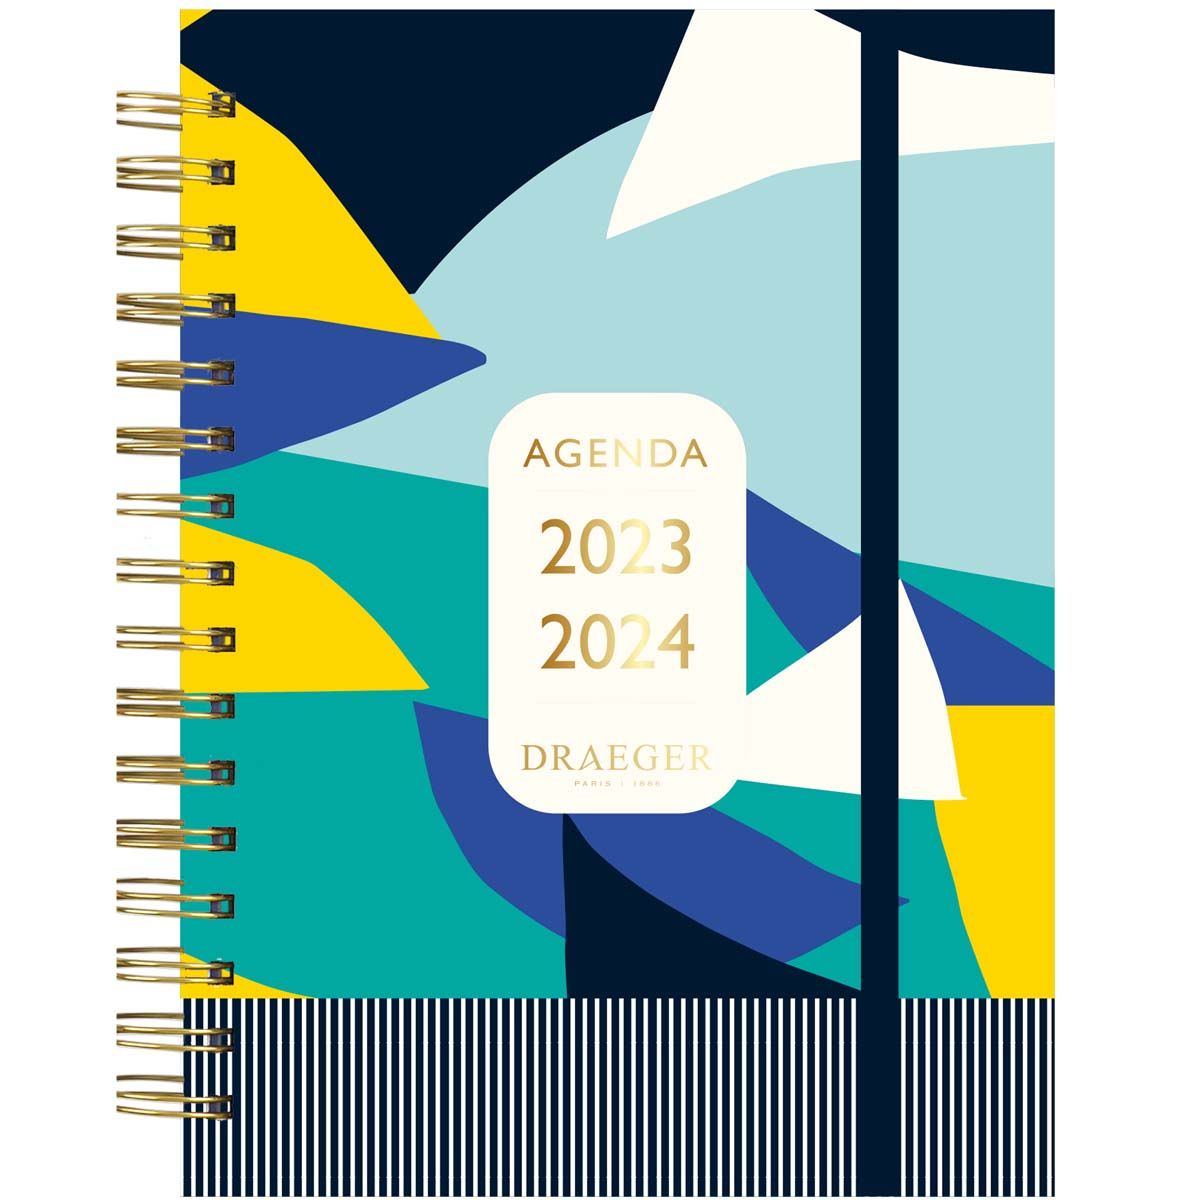 Agenda semainier 2023-2024 - 13x18 cm - - septembre 2023 à août 2024 - bleu  et jaune blanc Draeger Paris